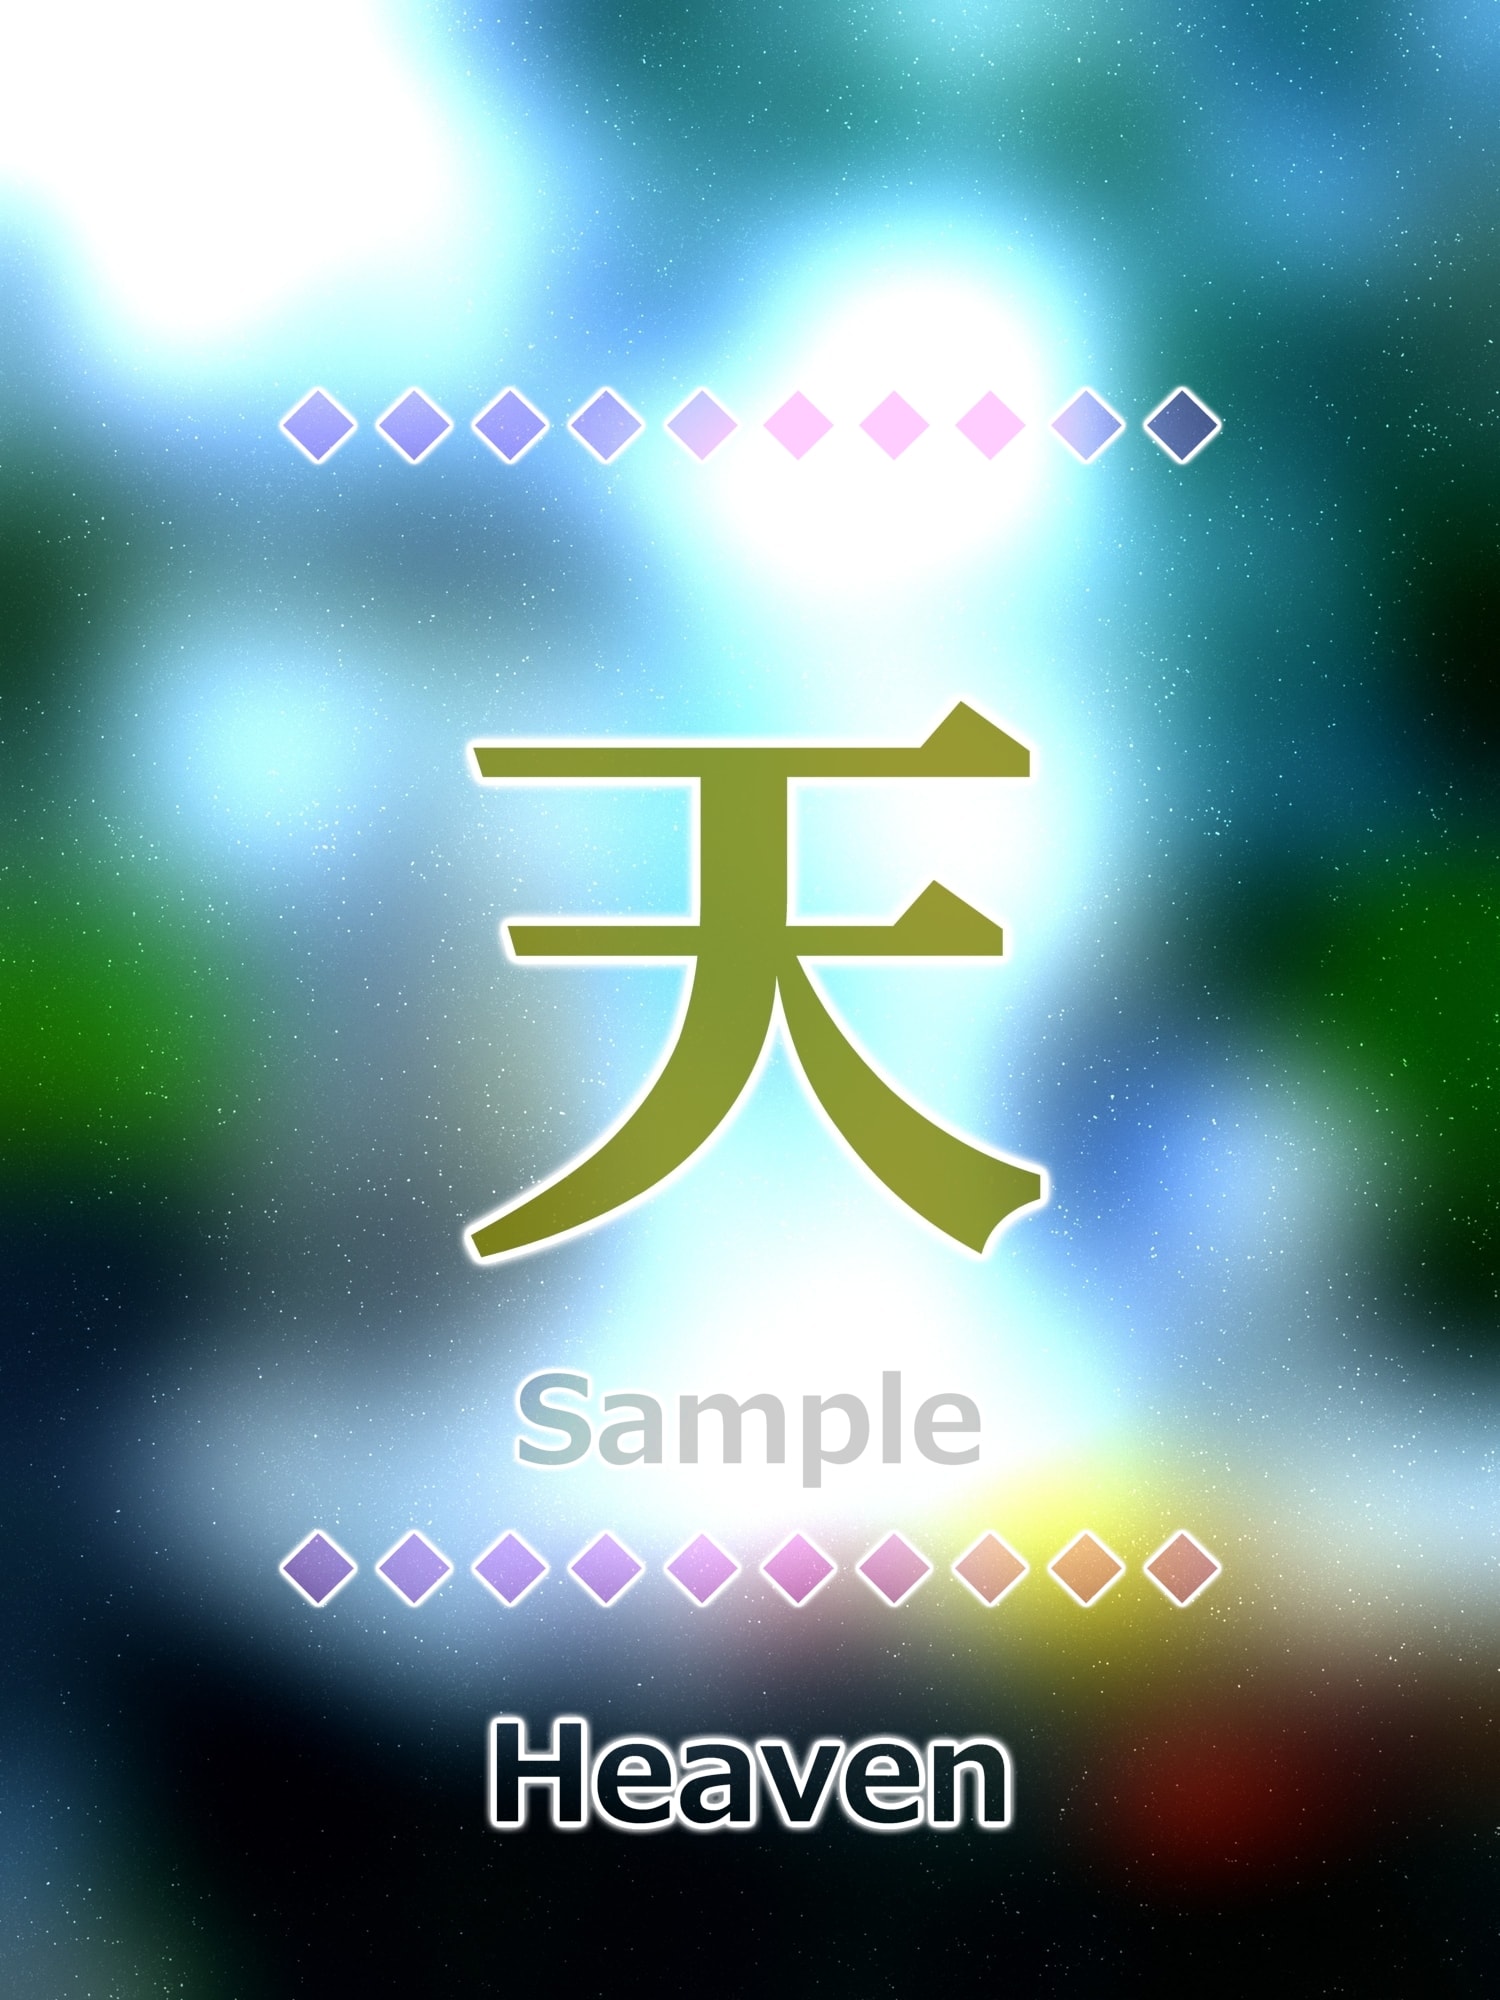 天 heaven Kanji good luck charm amulet art glossy